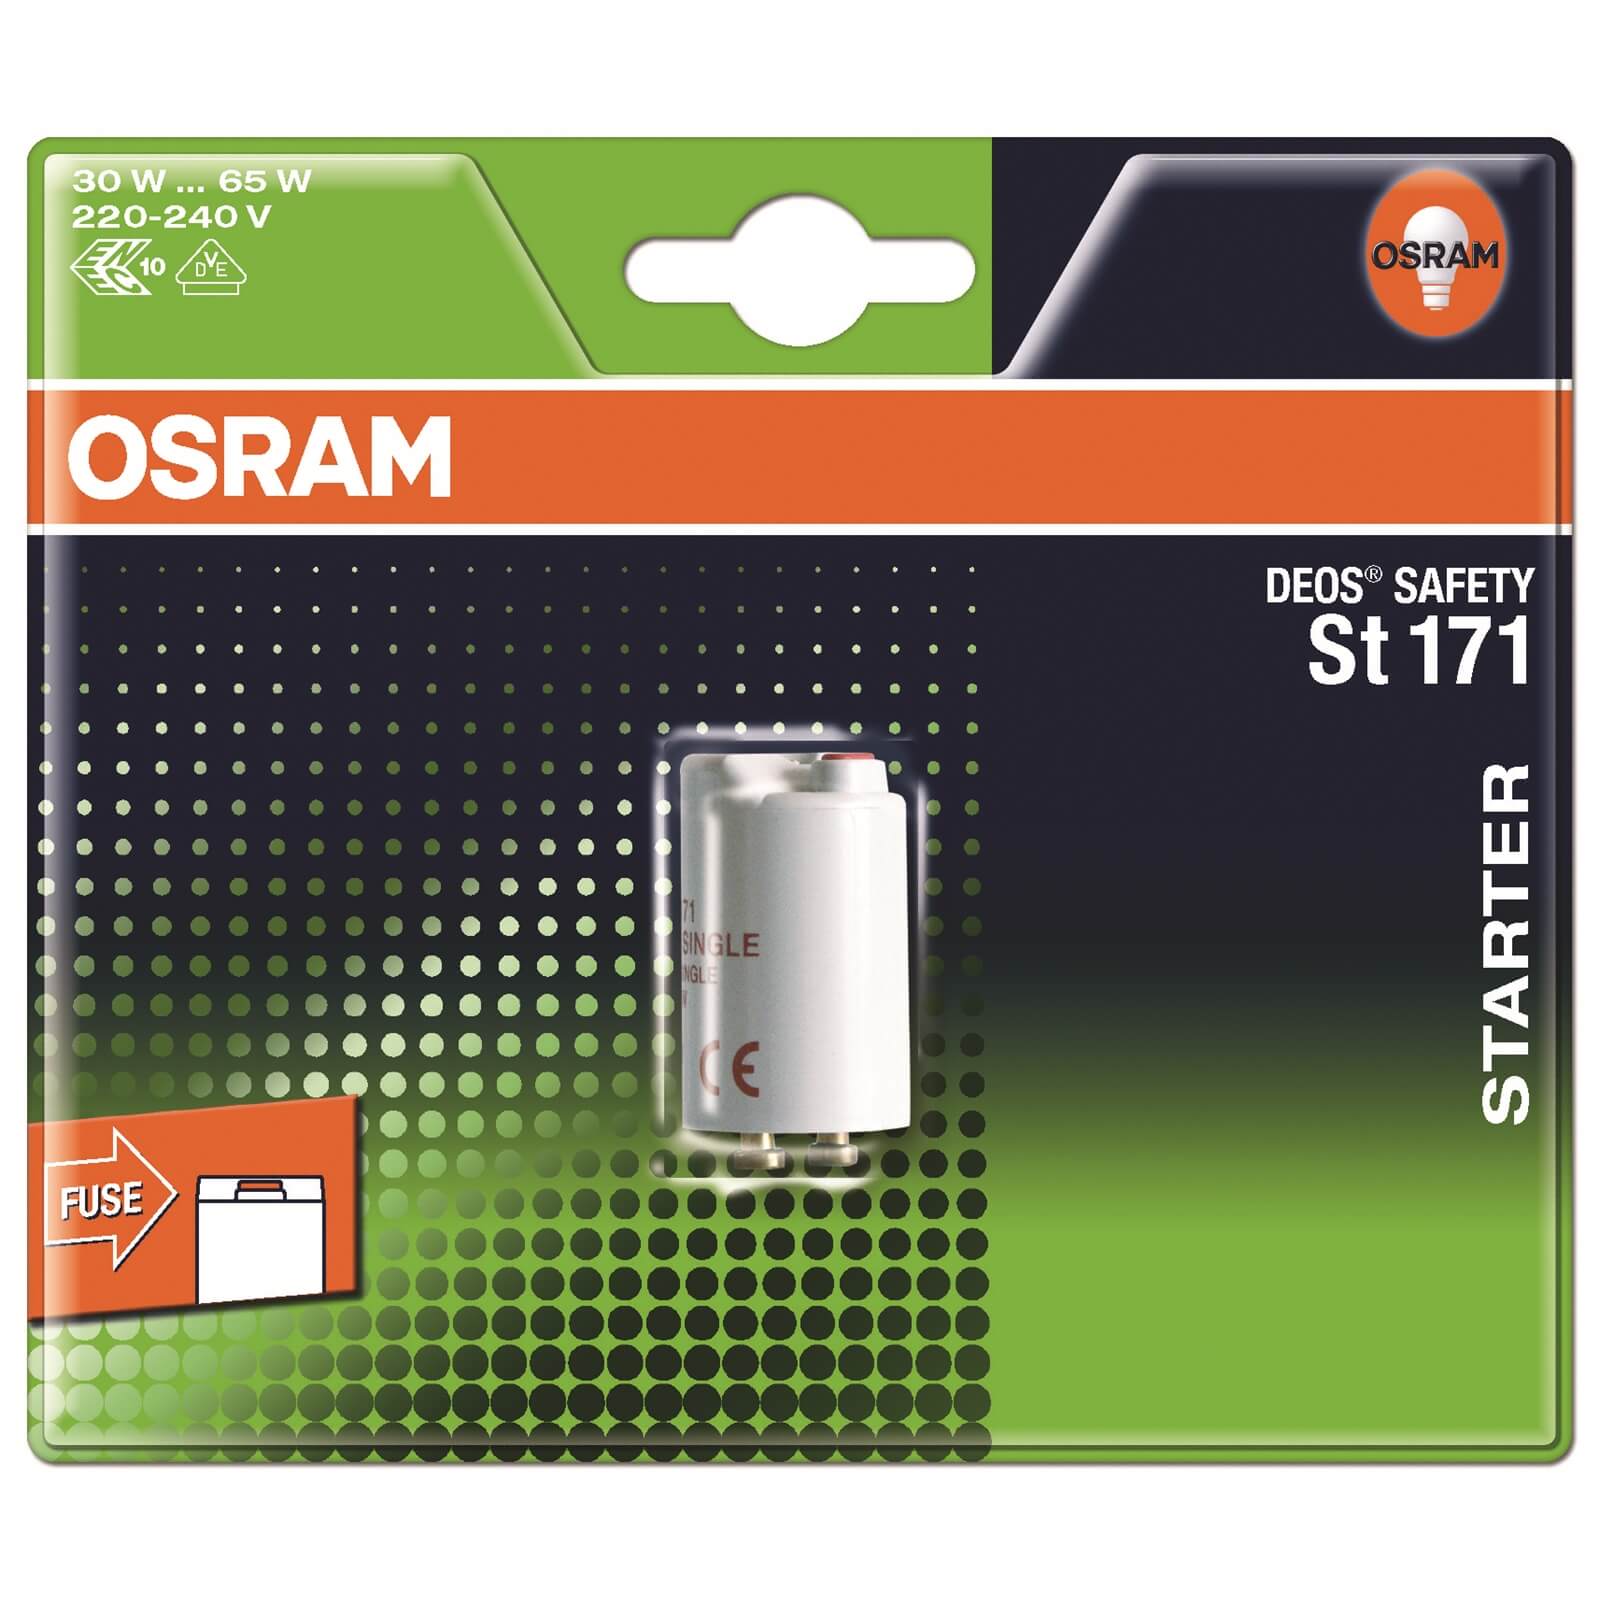 Osram Integrated Starter 65W Light Bulb